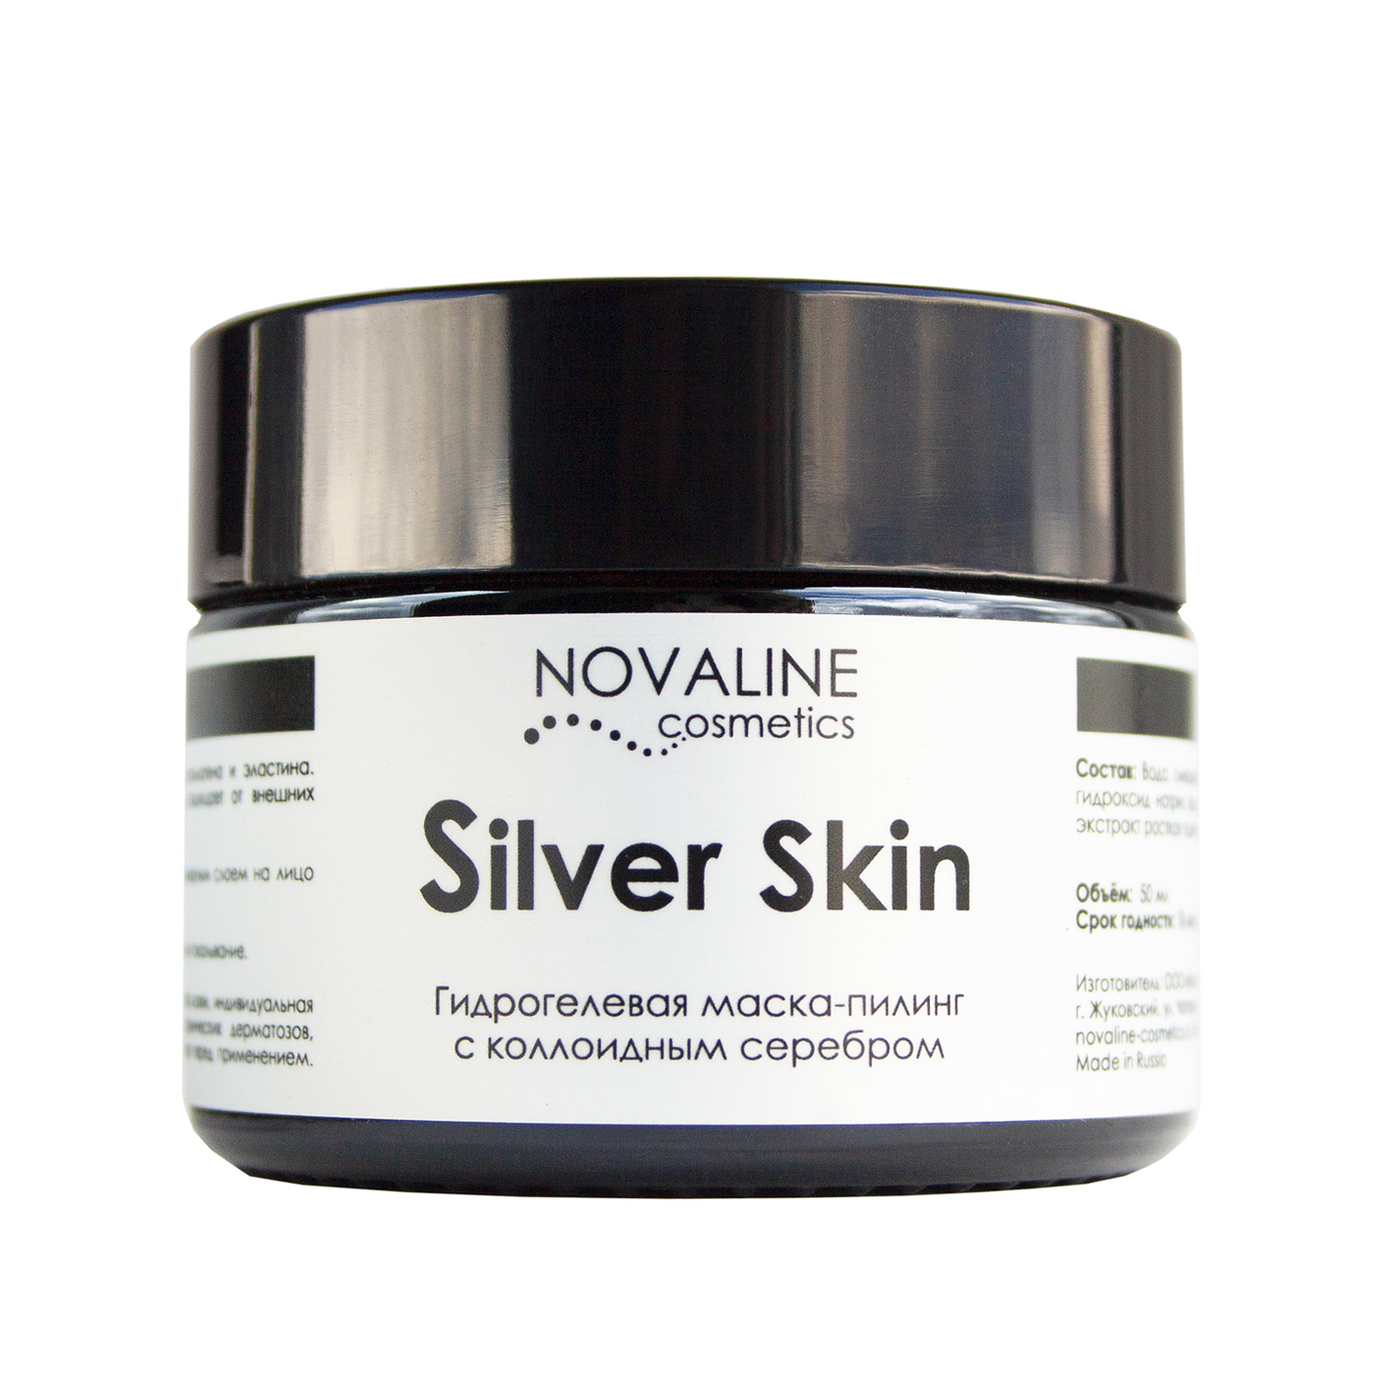 Маска-пилинг для лица Novoline Cosmetics Silver Skin  с гликолевой кислотой 12% и коллоидным серебром для проблемной кожи фото